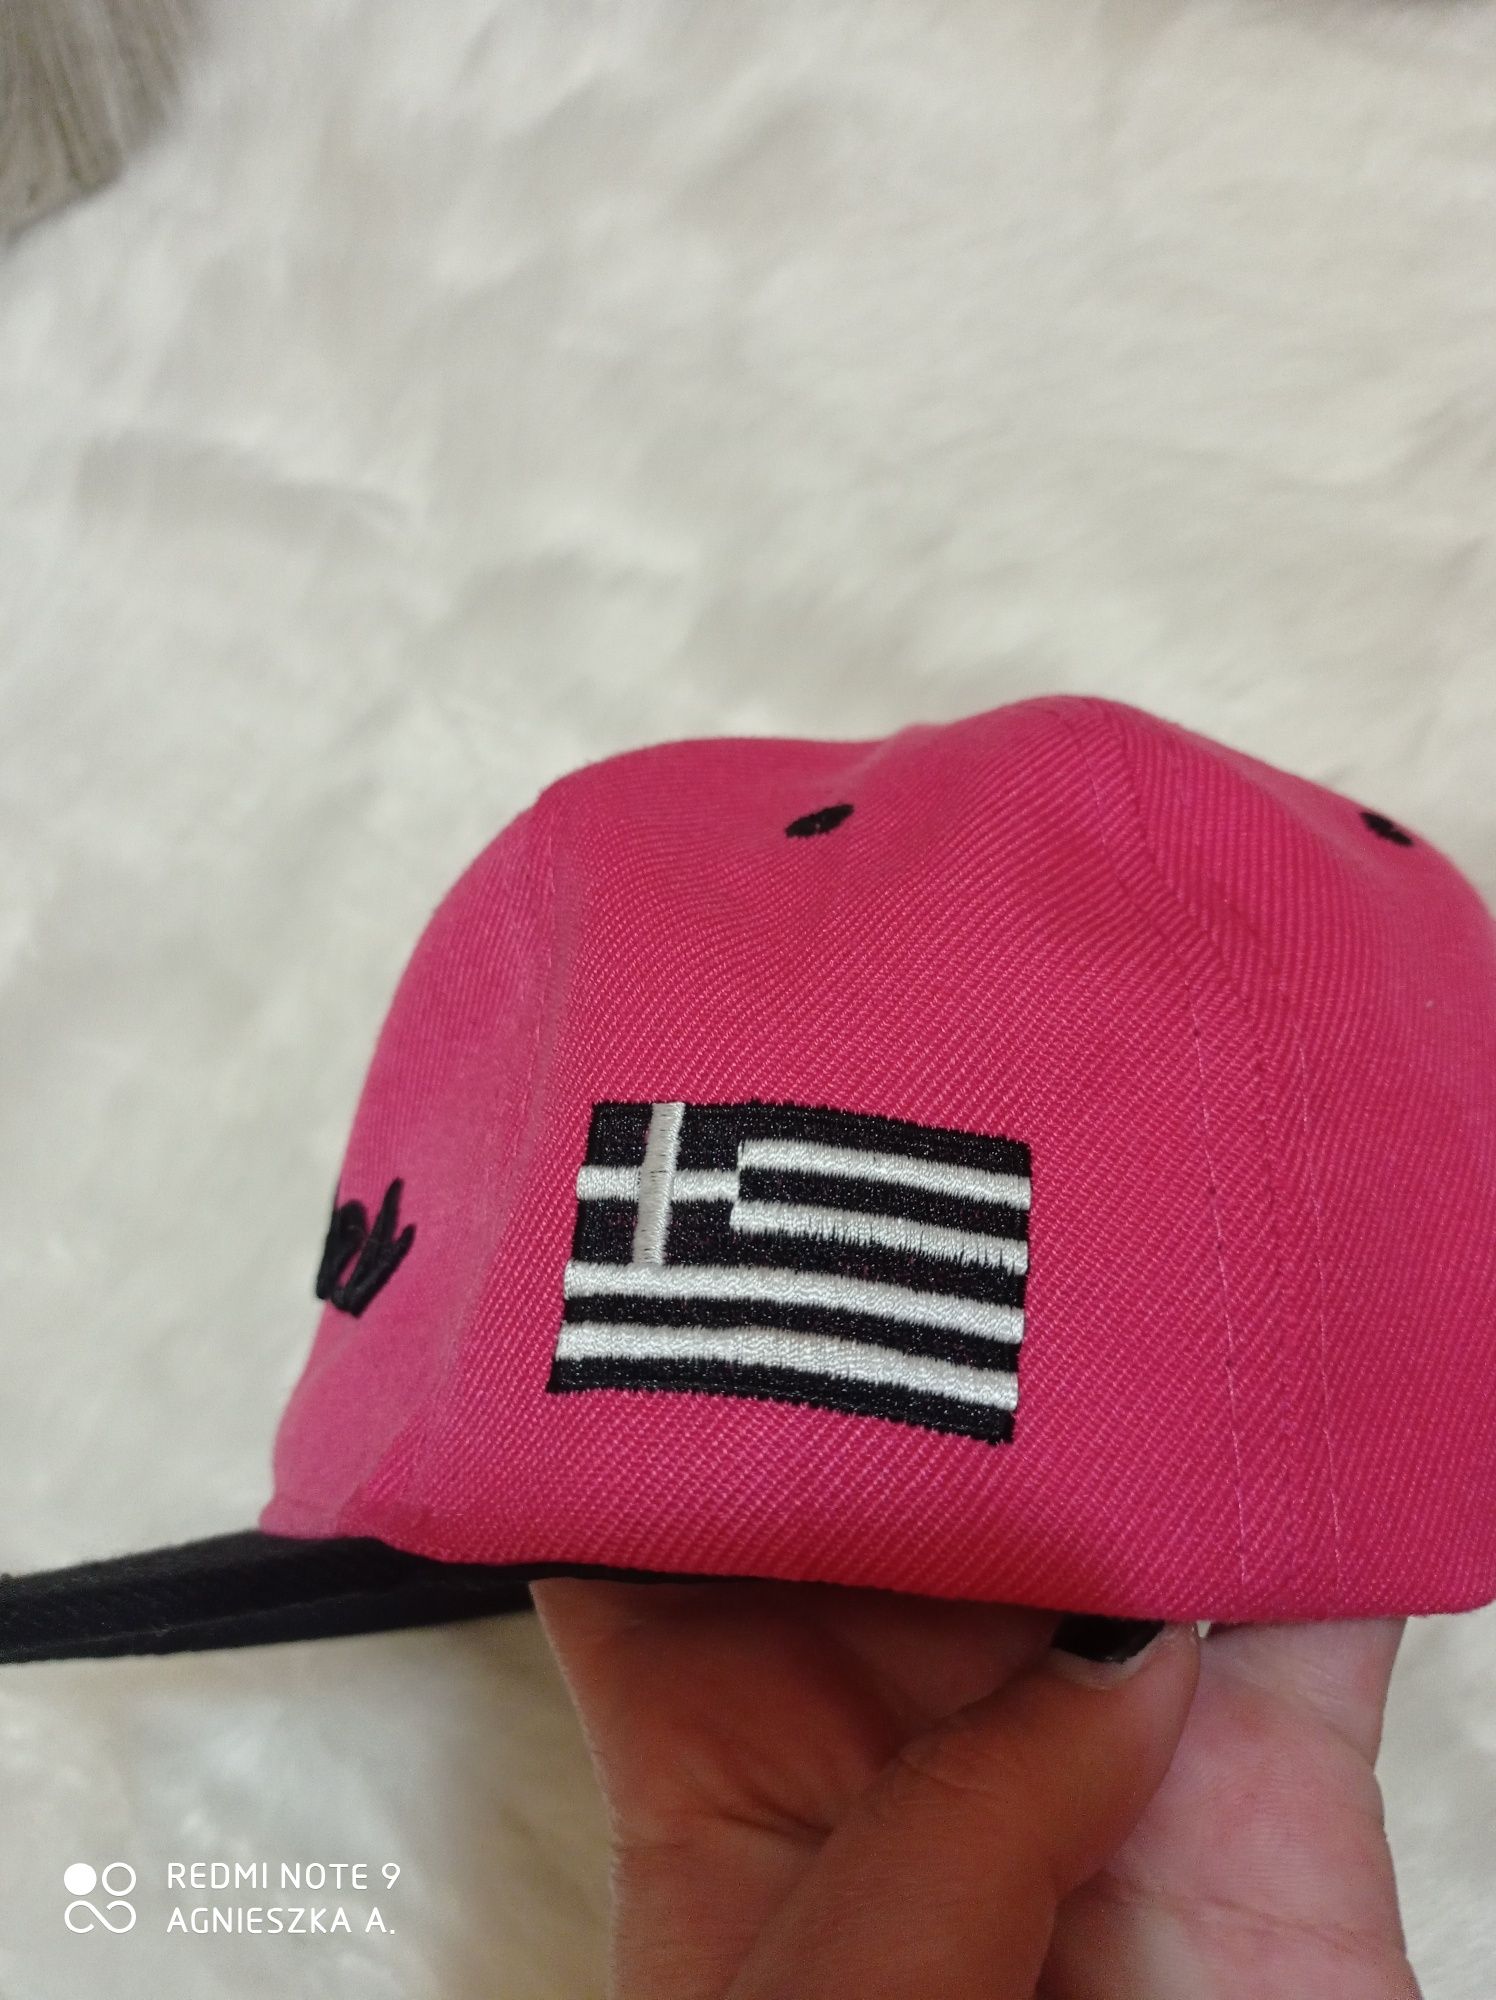 Full cap kaszkietówka czapka z daszkiem Rhodos streetwear